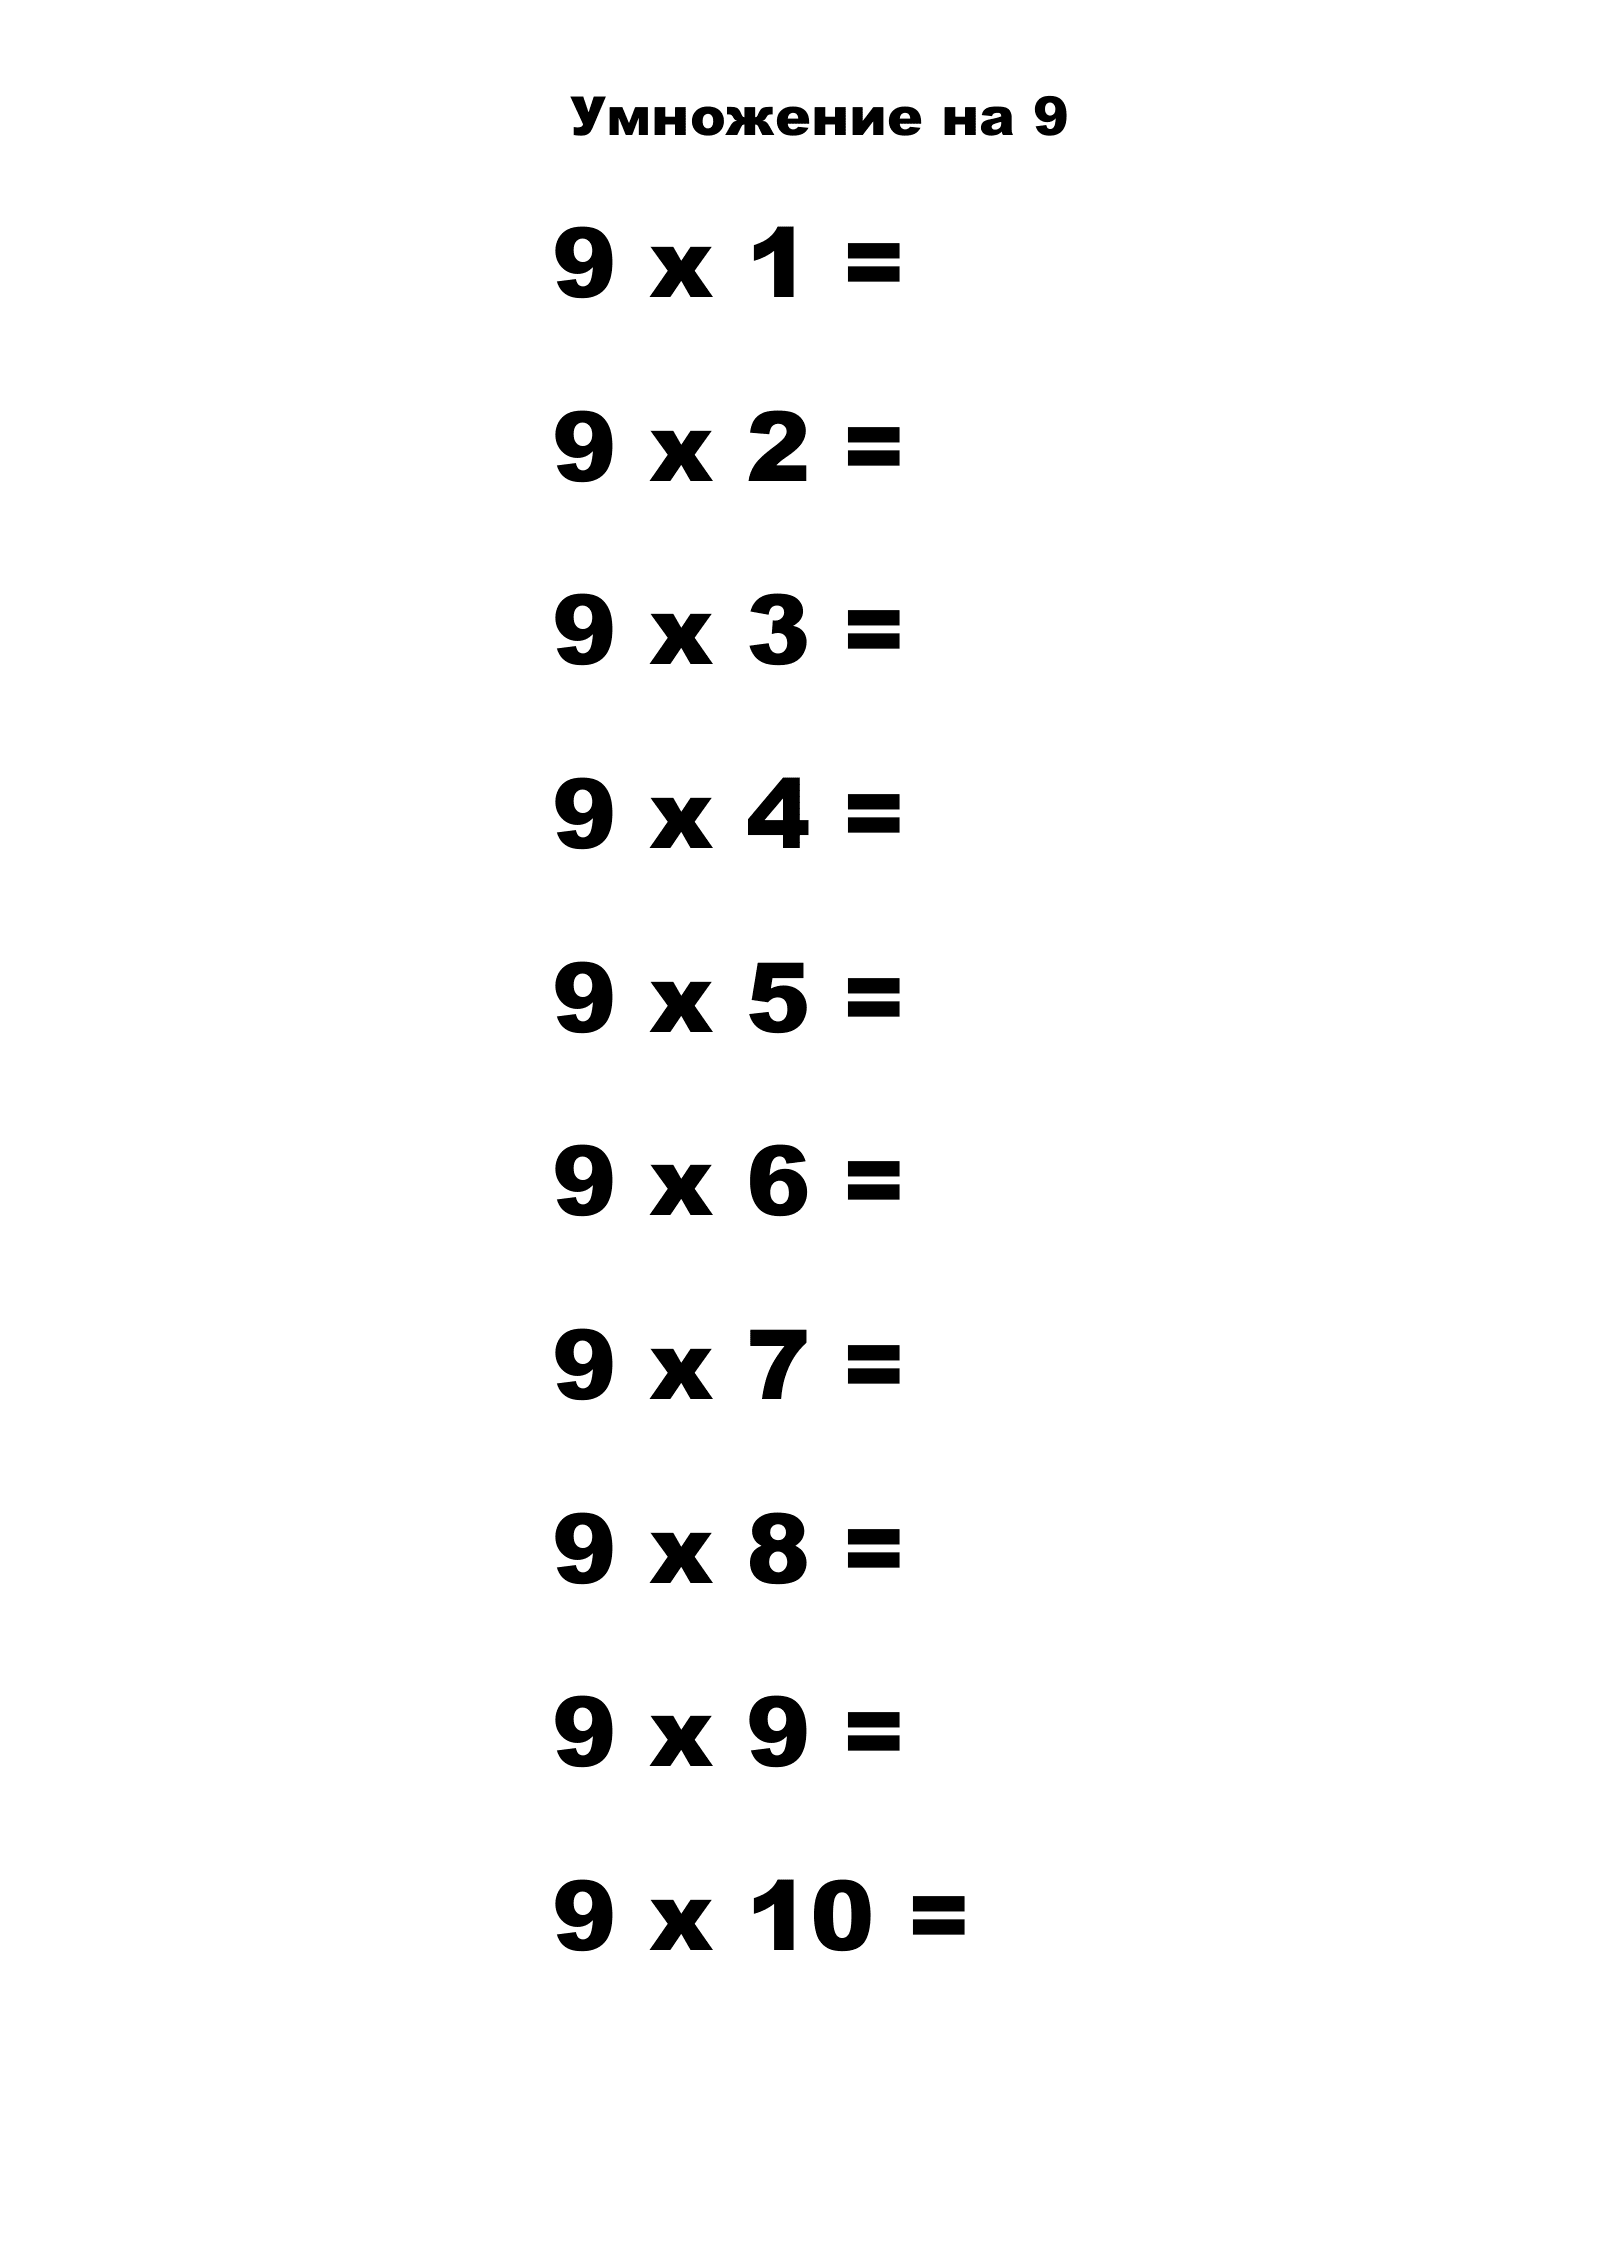 Таблица умножения на 9 без ответов. Распечатать